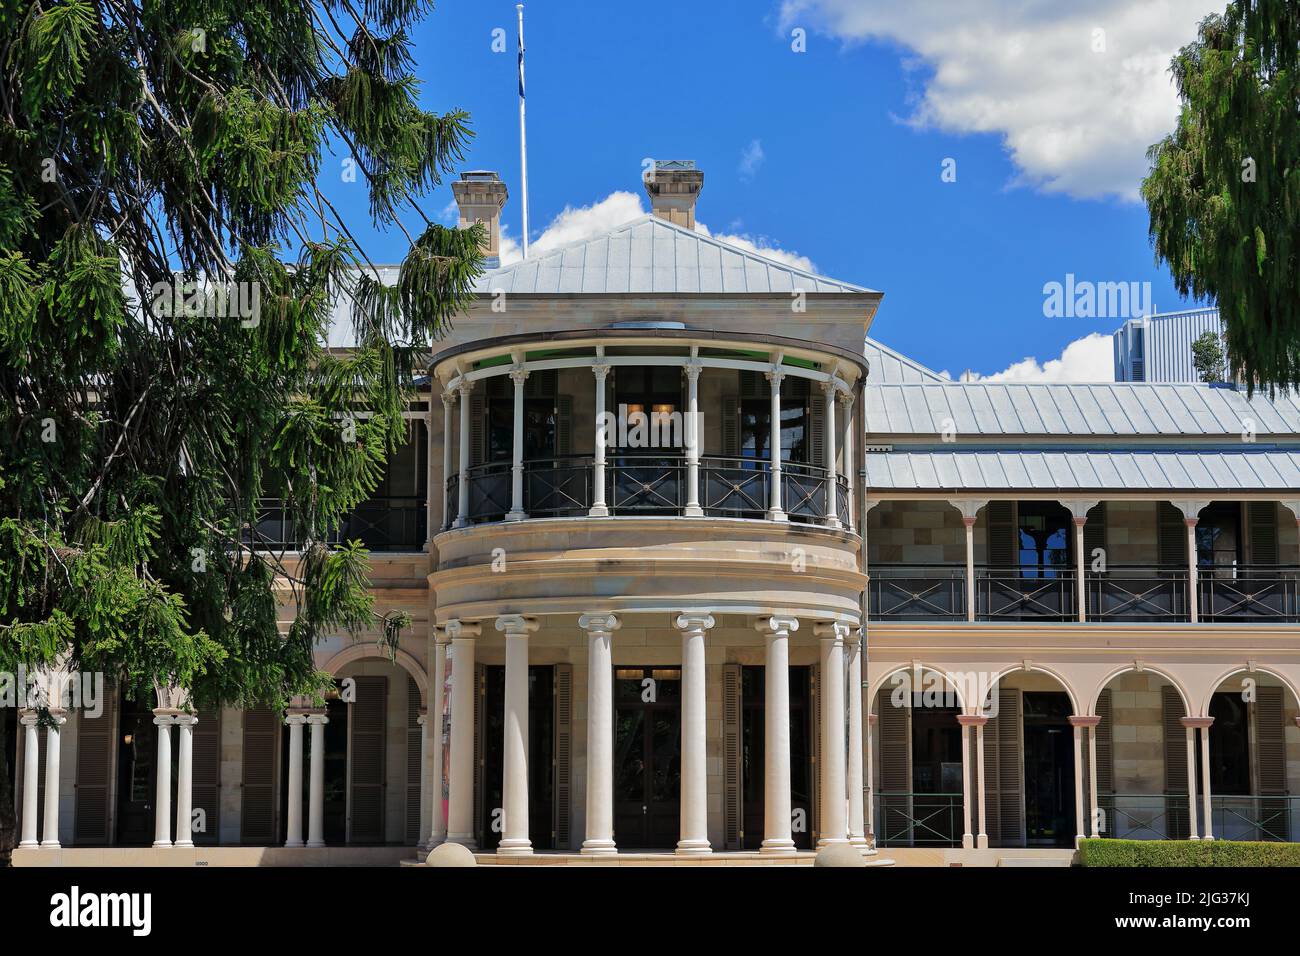 036 Fachada principal de piedra arenisade la antigua casa de gobierno de Queensland. Brisbane-Australia. Foto de stock